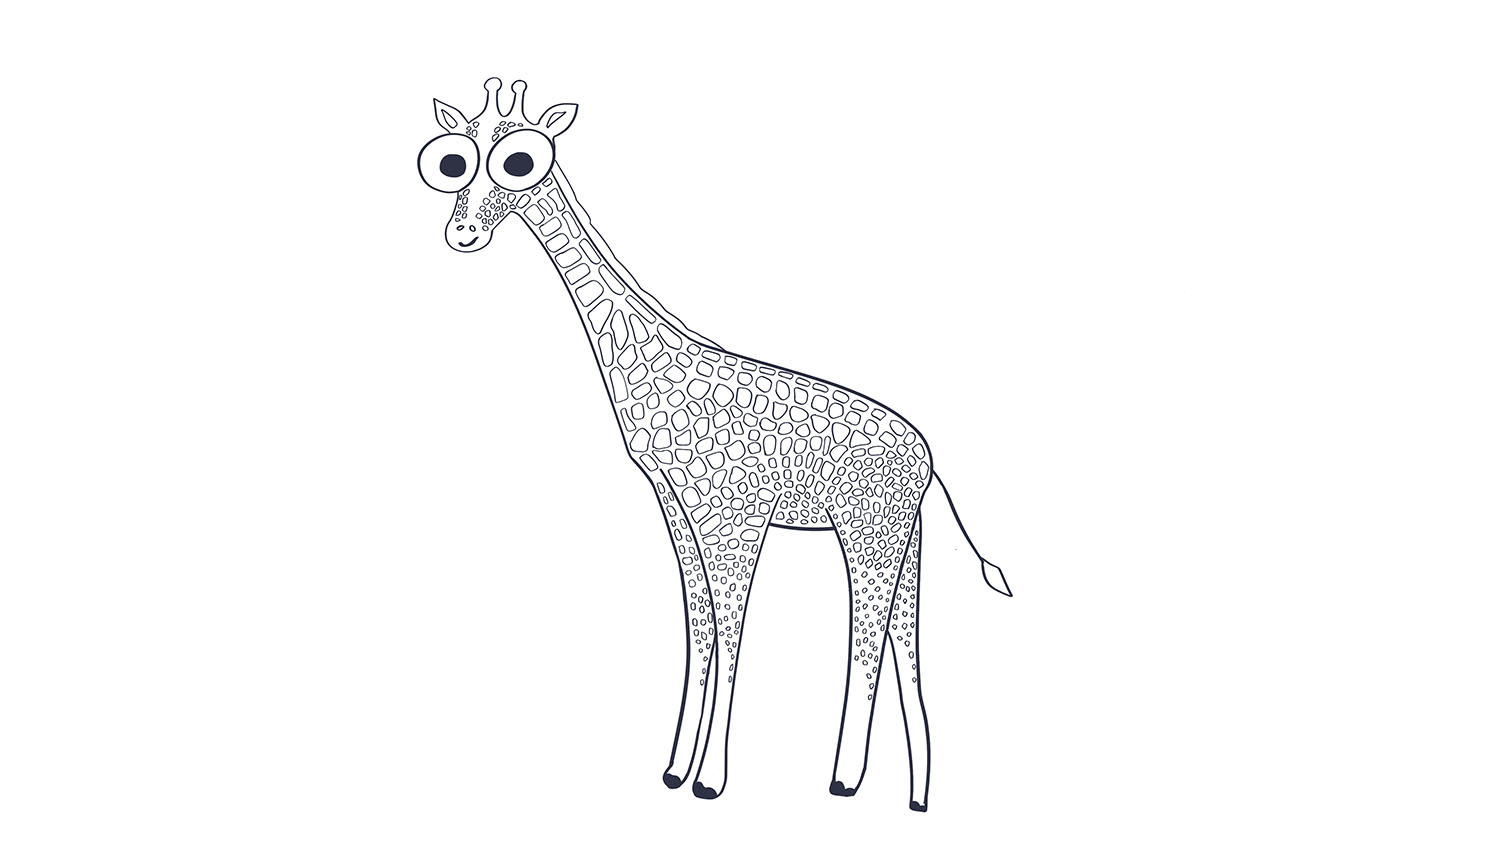 53. Jirafa / Giraffe. 103dibujos